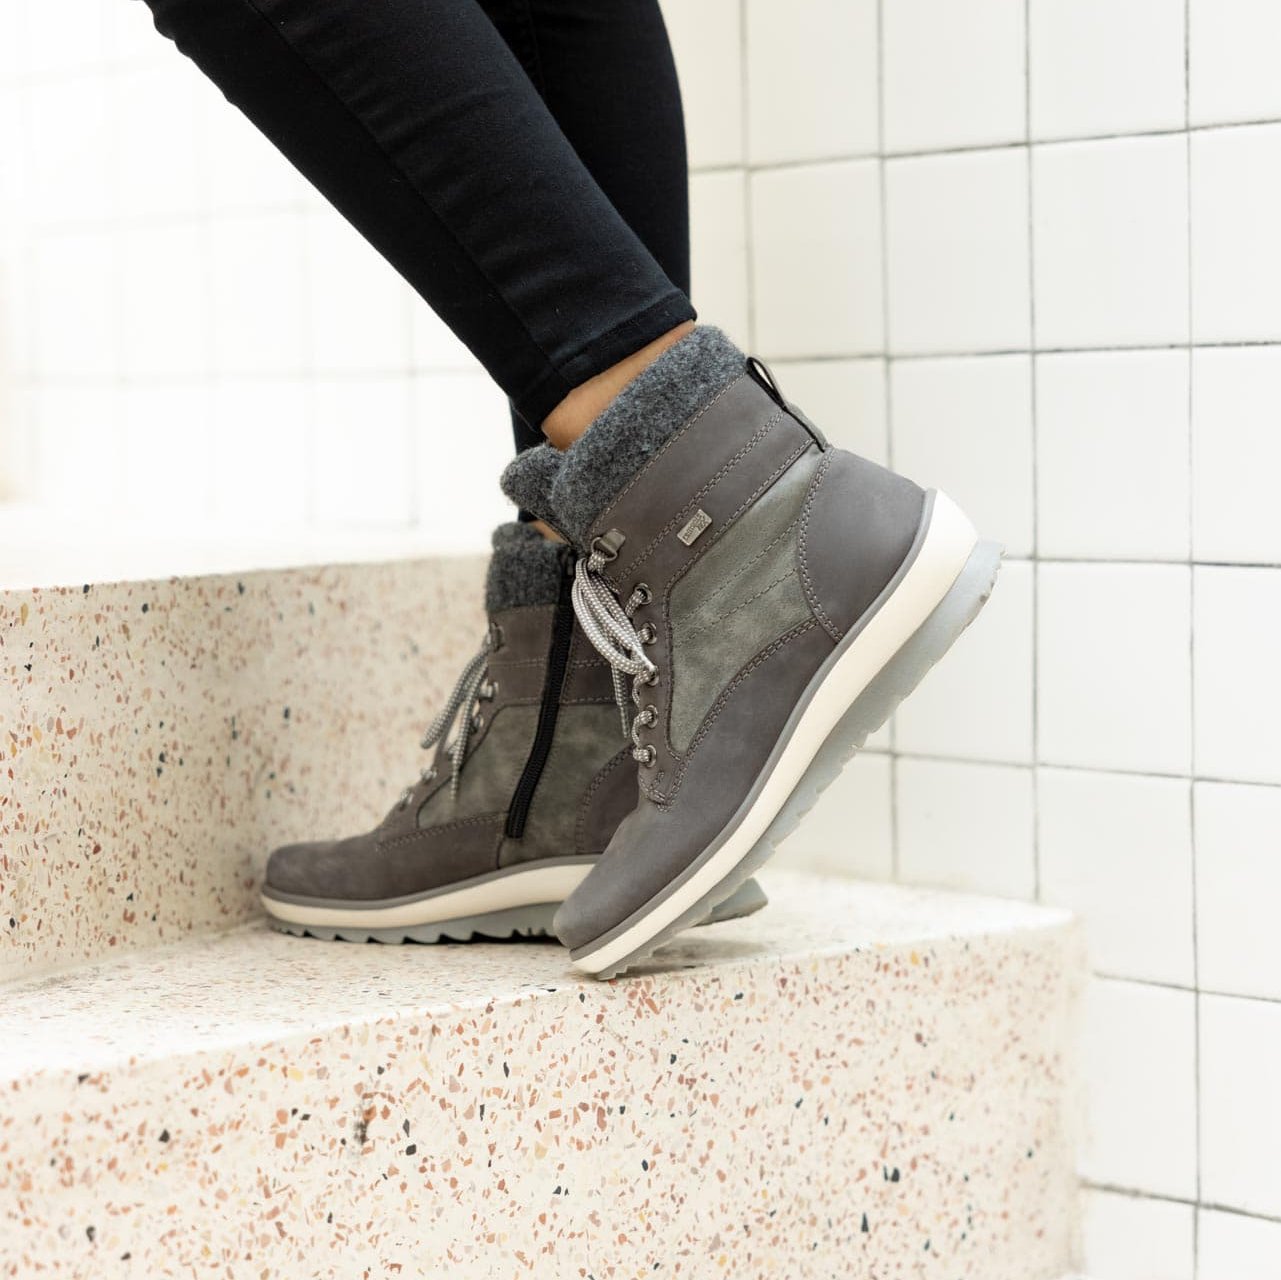 Graue Stiefel warm gefüttert aus Rauhleder mit Reißverschluss und Schnürung, wasserabweisendem Remonte TEX und Wechselfußbett. Passend zu den Schuhen trägt die Frau im Treppenhaus eine schwarze Hose.